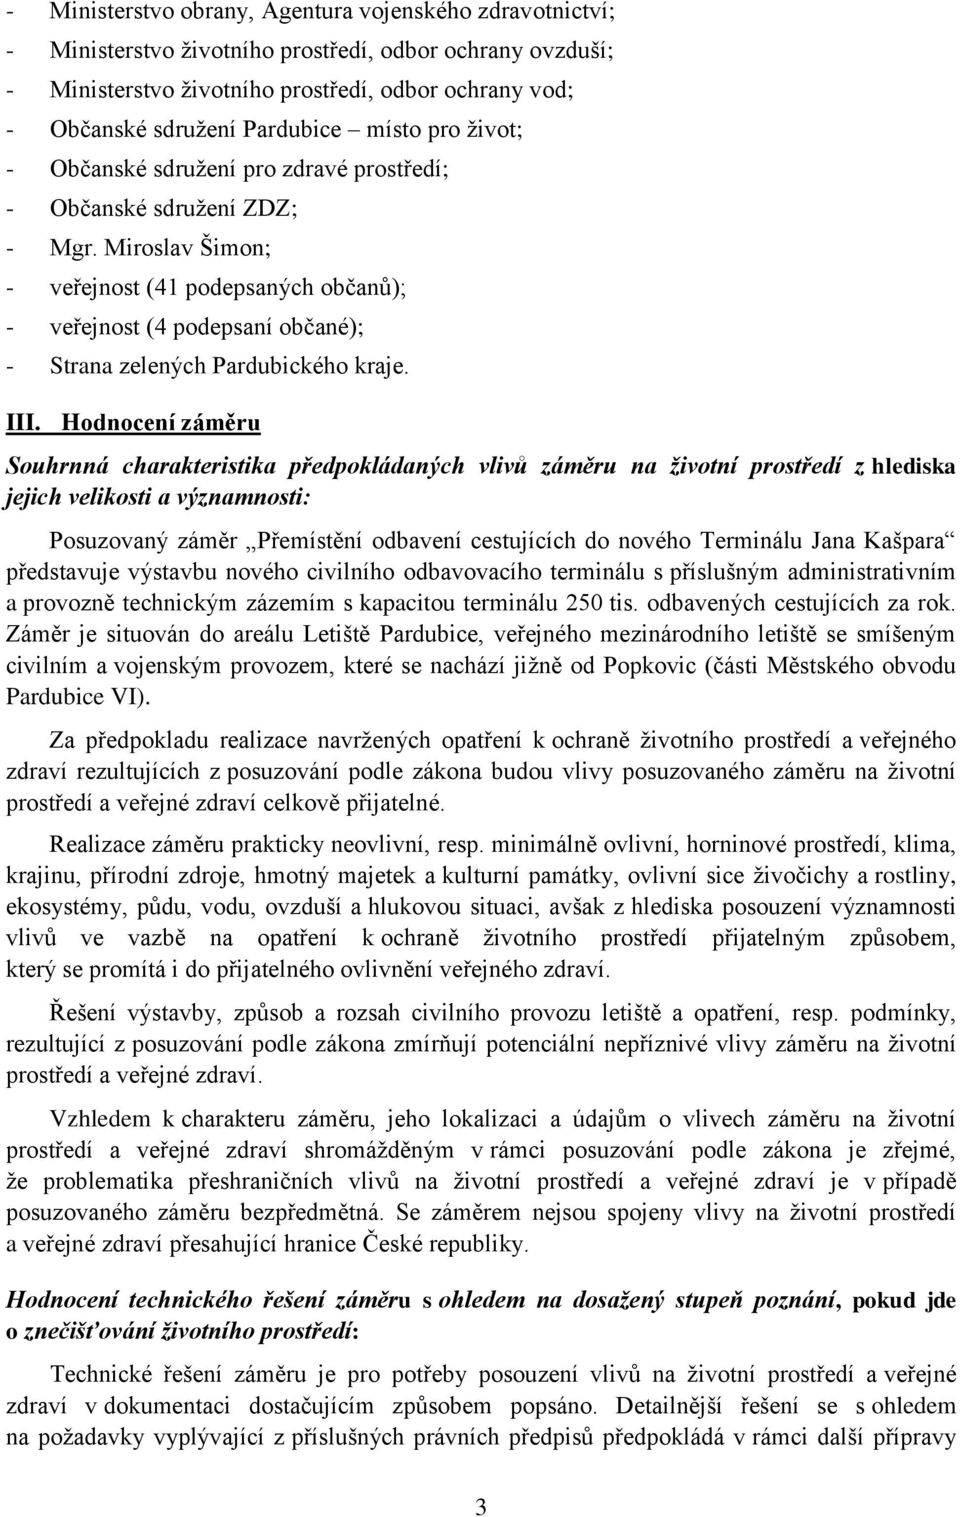 Miroslav Šimon; - veřejnost (41 podepsaných občanů); - veřejnost (4 podepsaní občané); - Strana zelených Pardubického kraje. III.